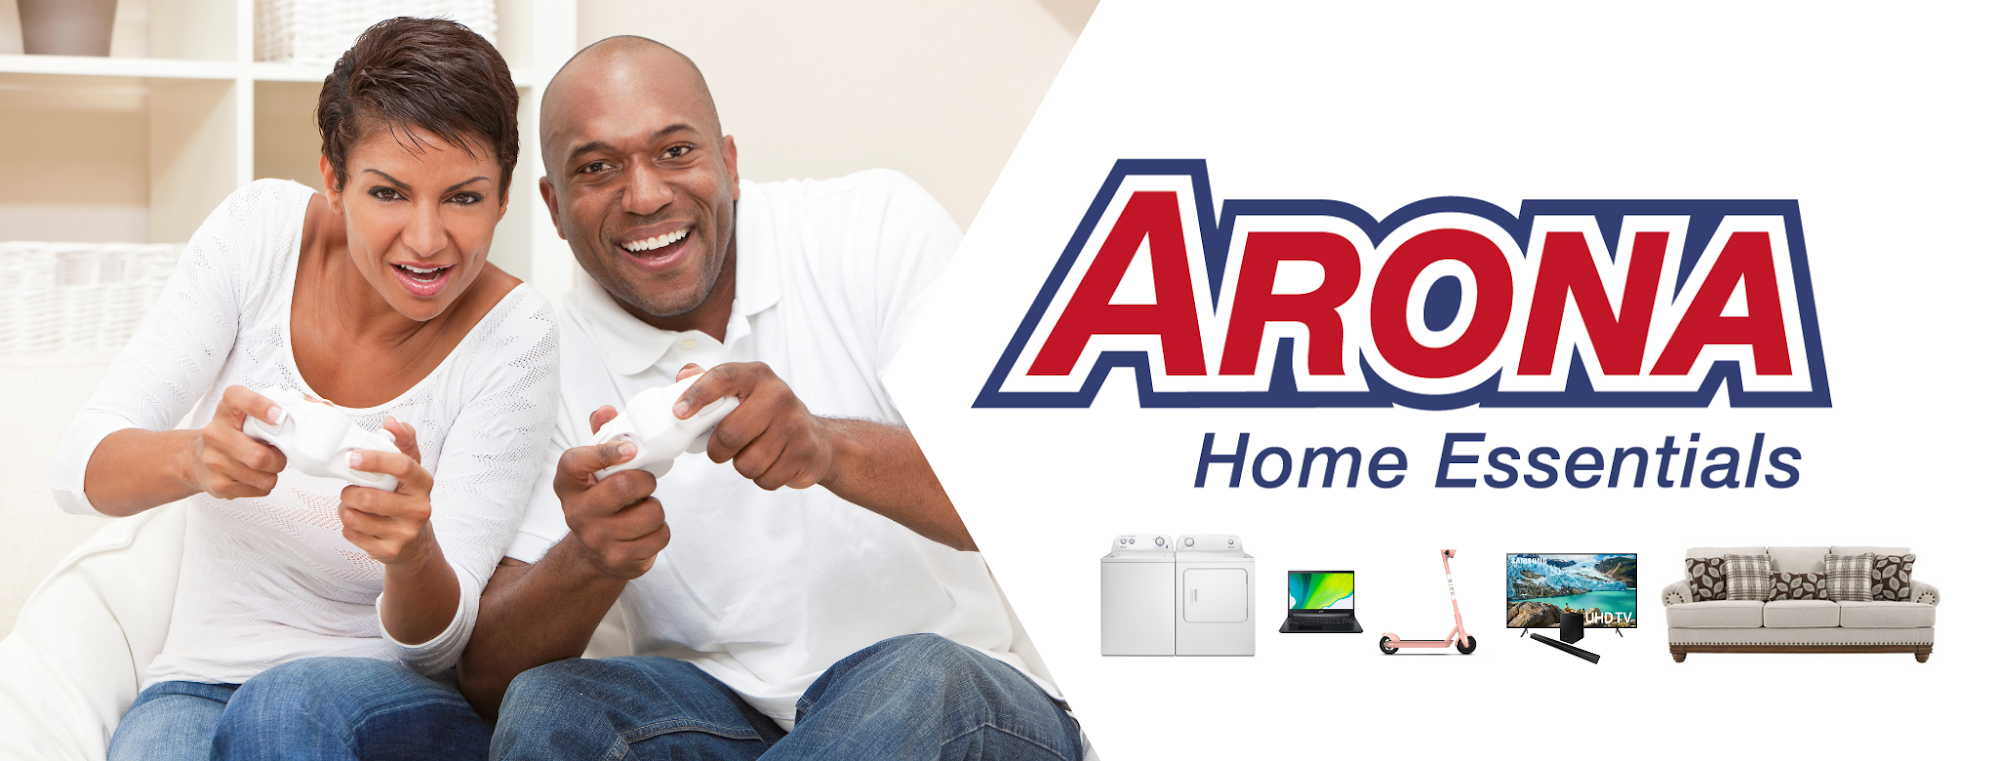 Arona Home Essentials Davenport